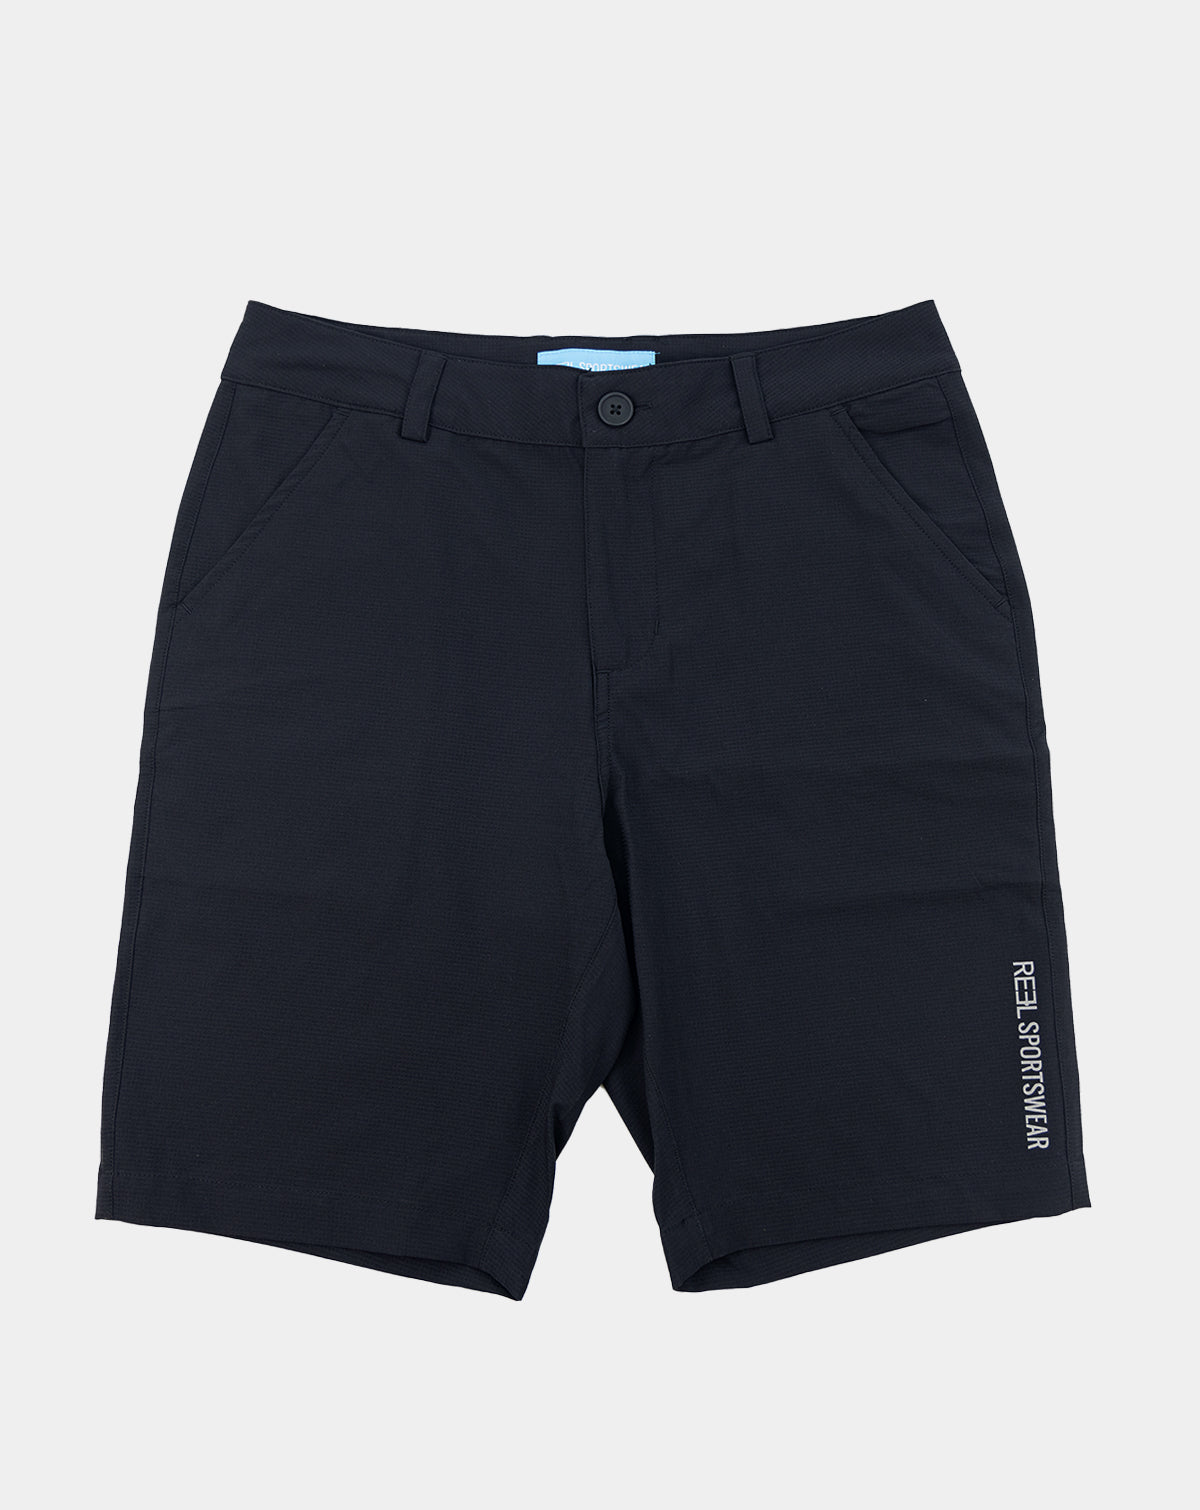 Tidal+ fishing Shorts - Black